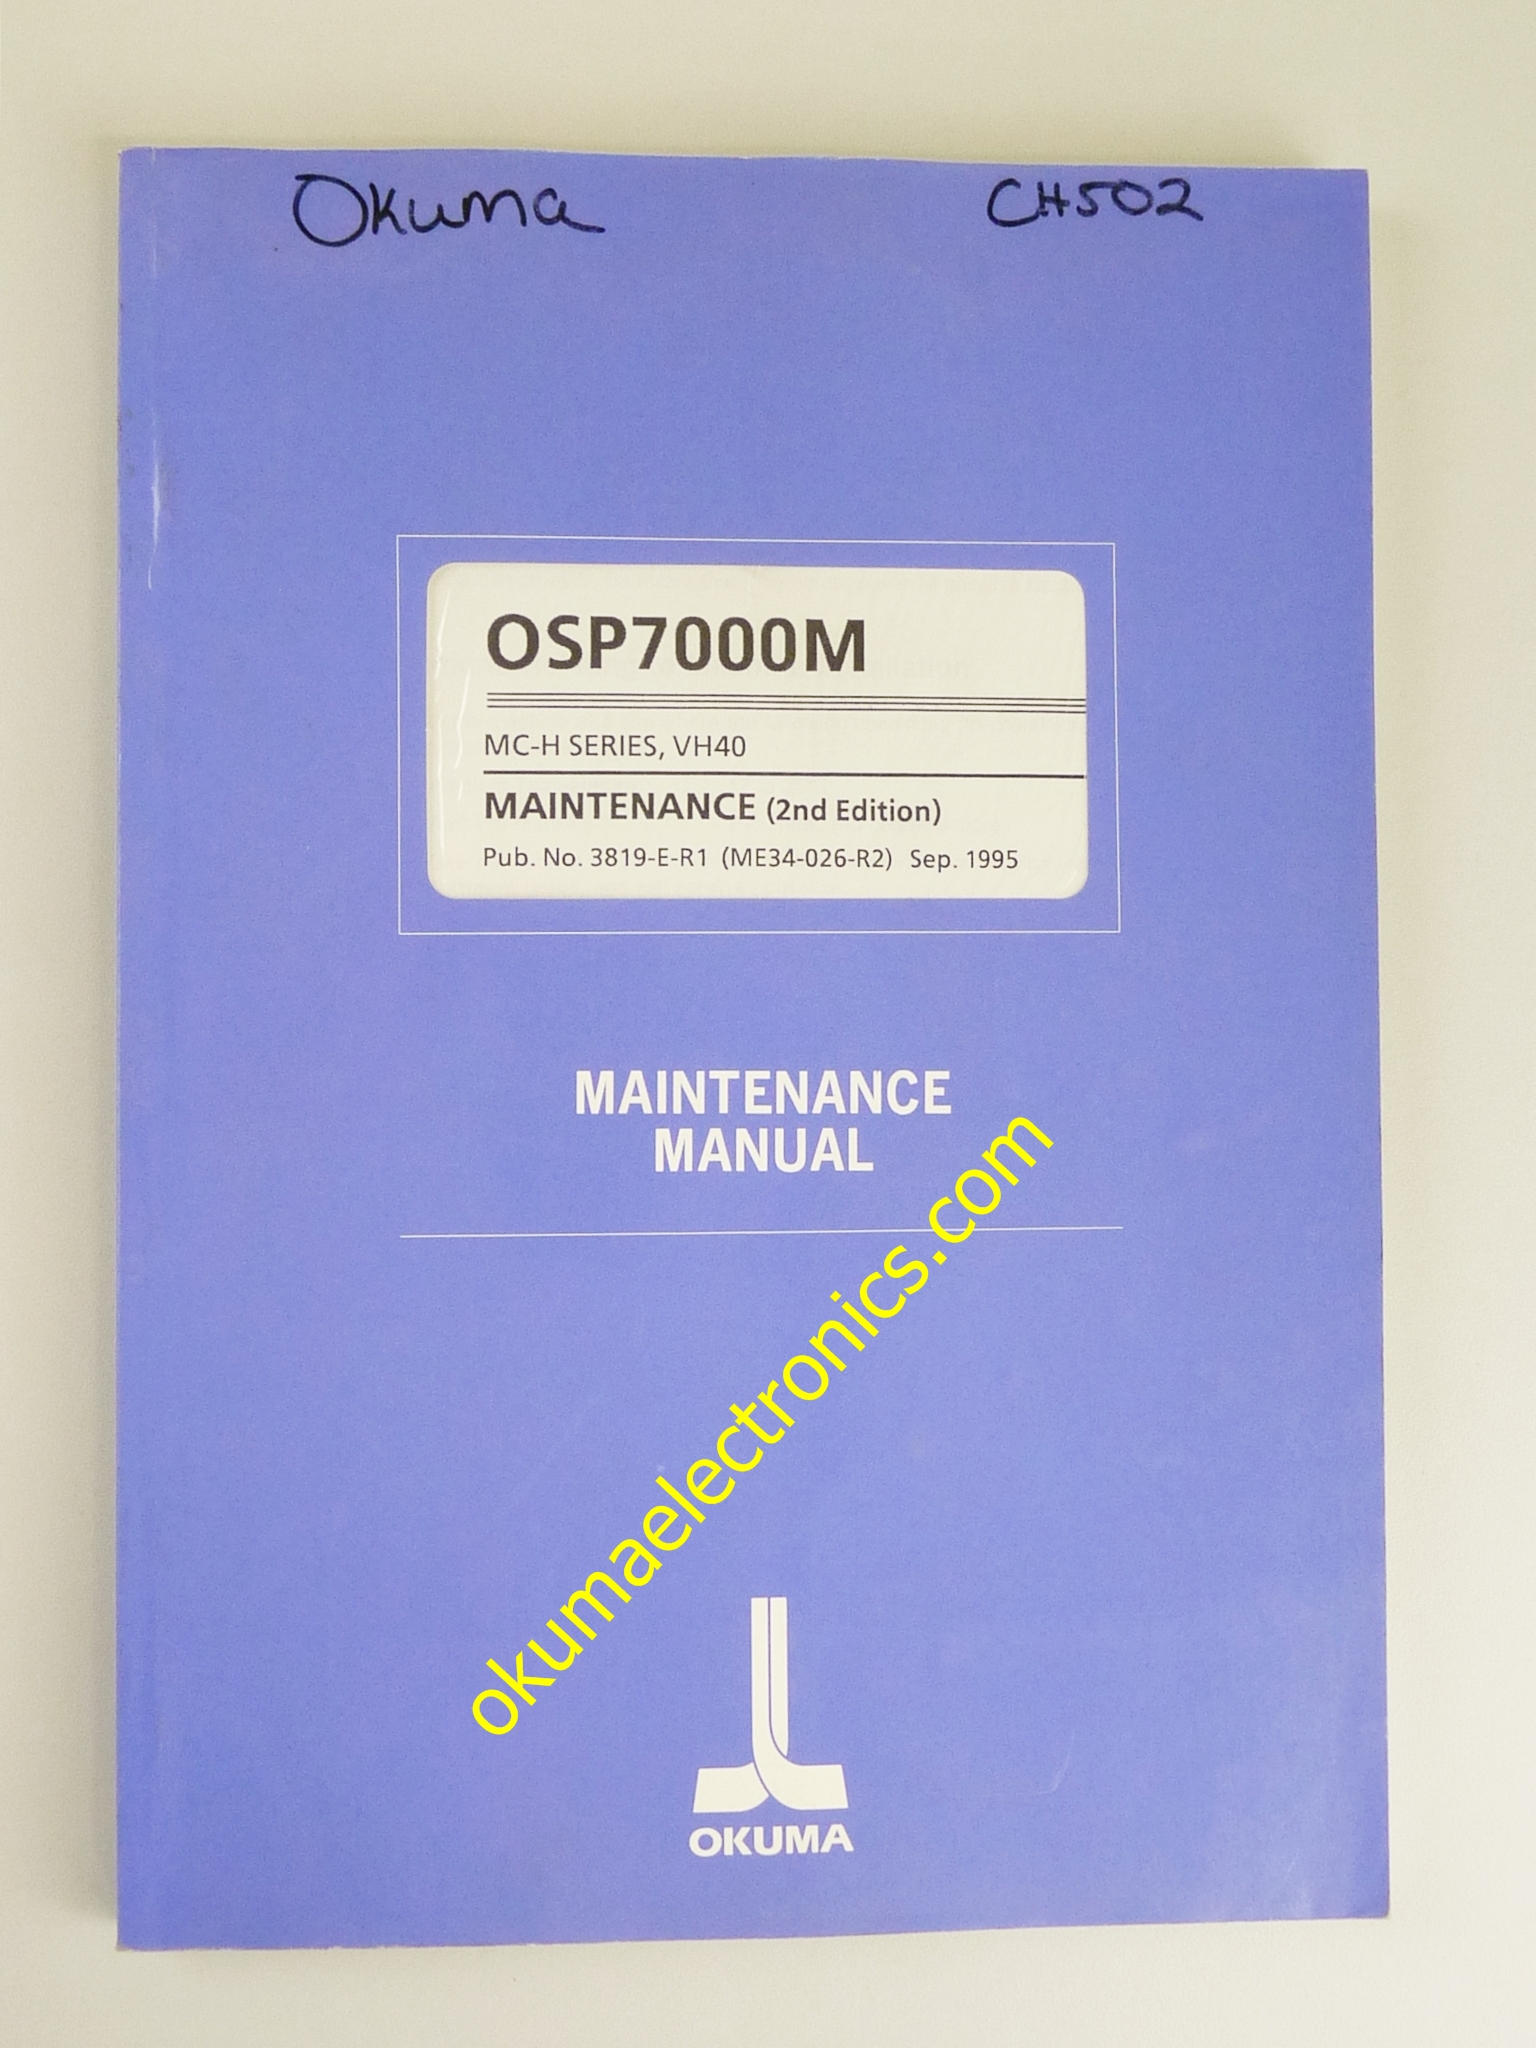 Okuma OSP7000M MC-H SERIES, VH40